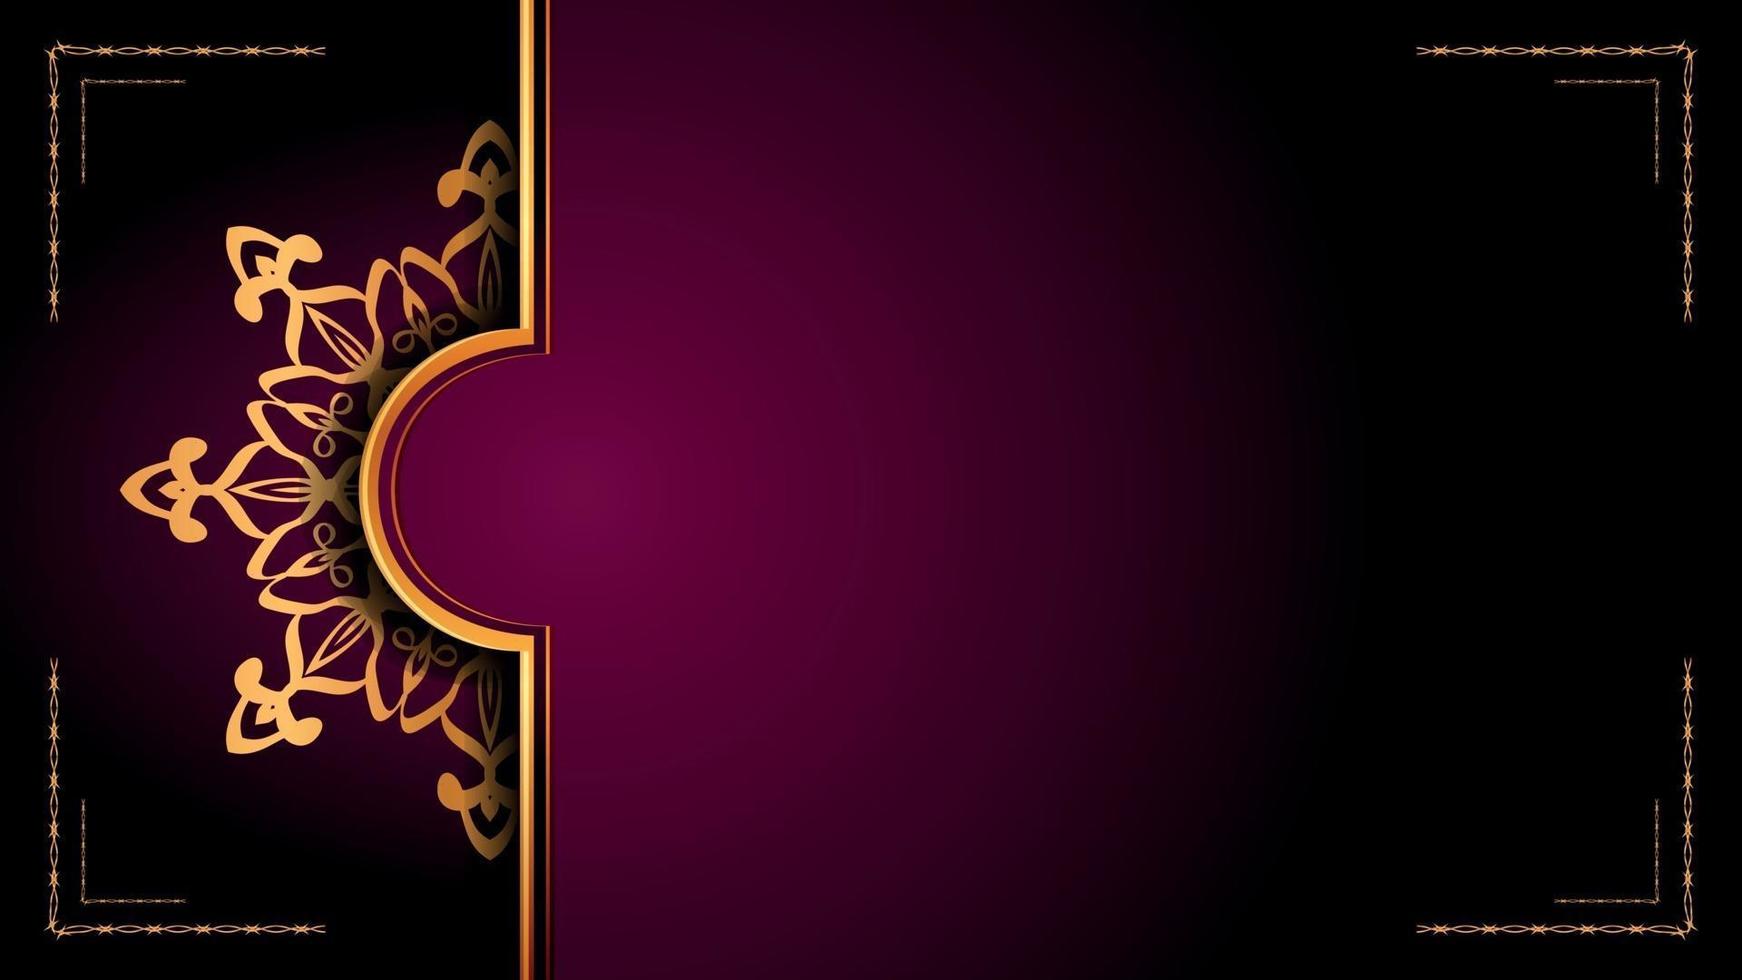 Luxus Zier Mandala Logo Hintergrund Arabeske Stil vektor